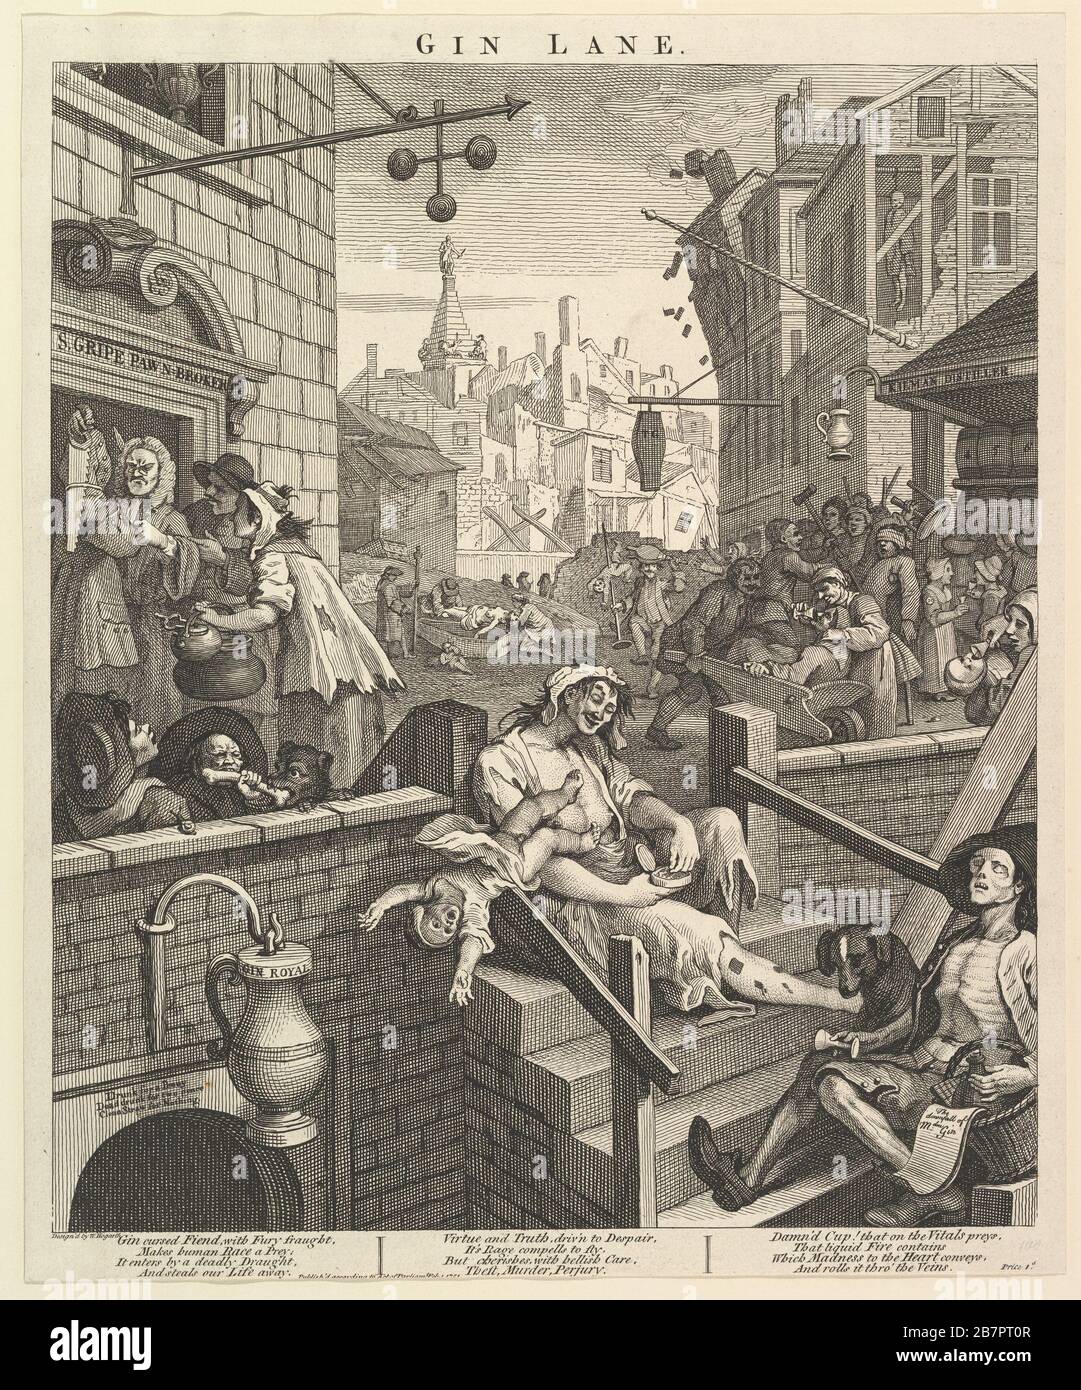 Gin Lane, 1er février 1751. Banque D'Images